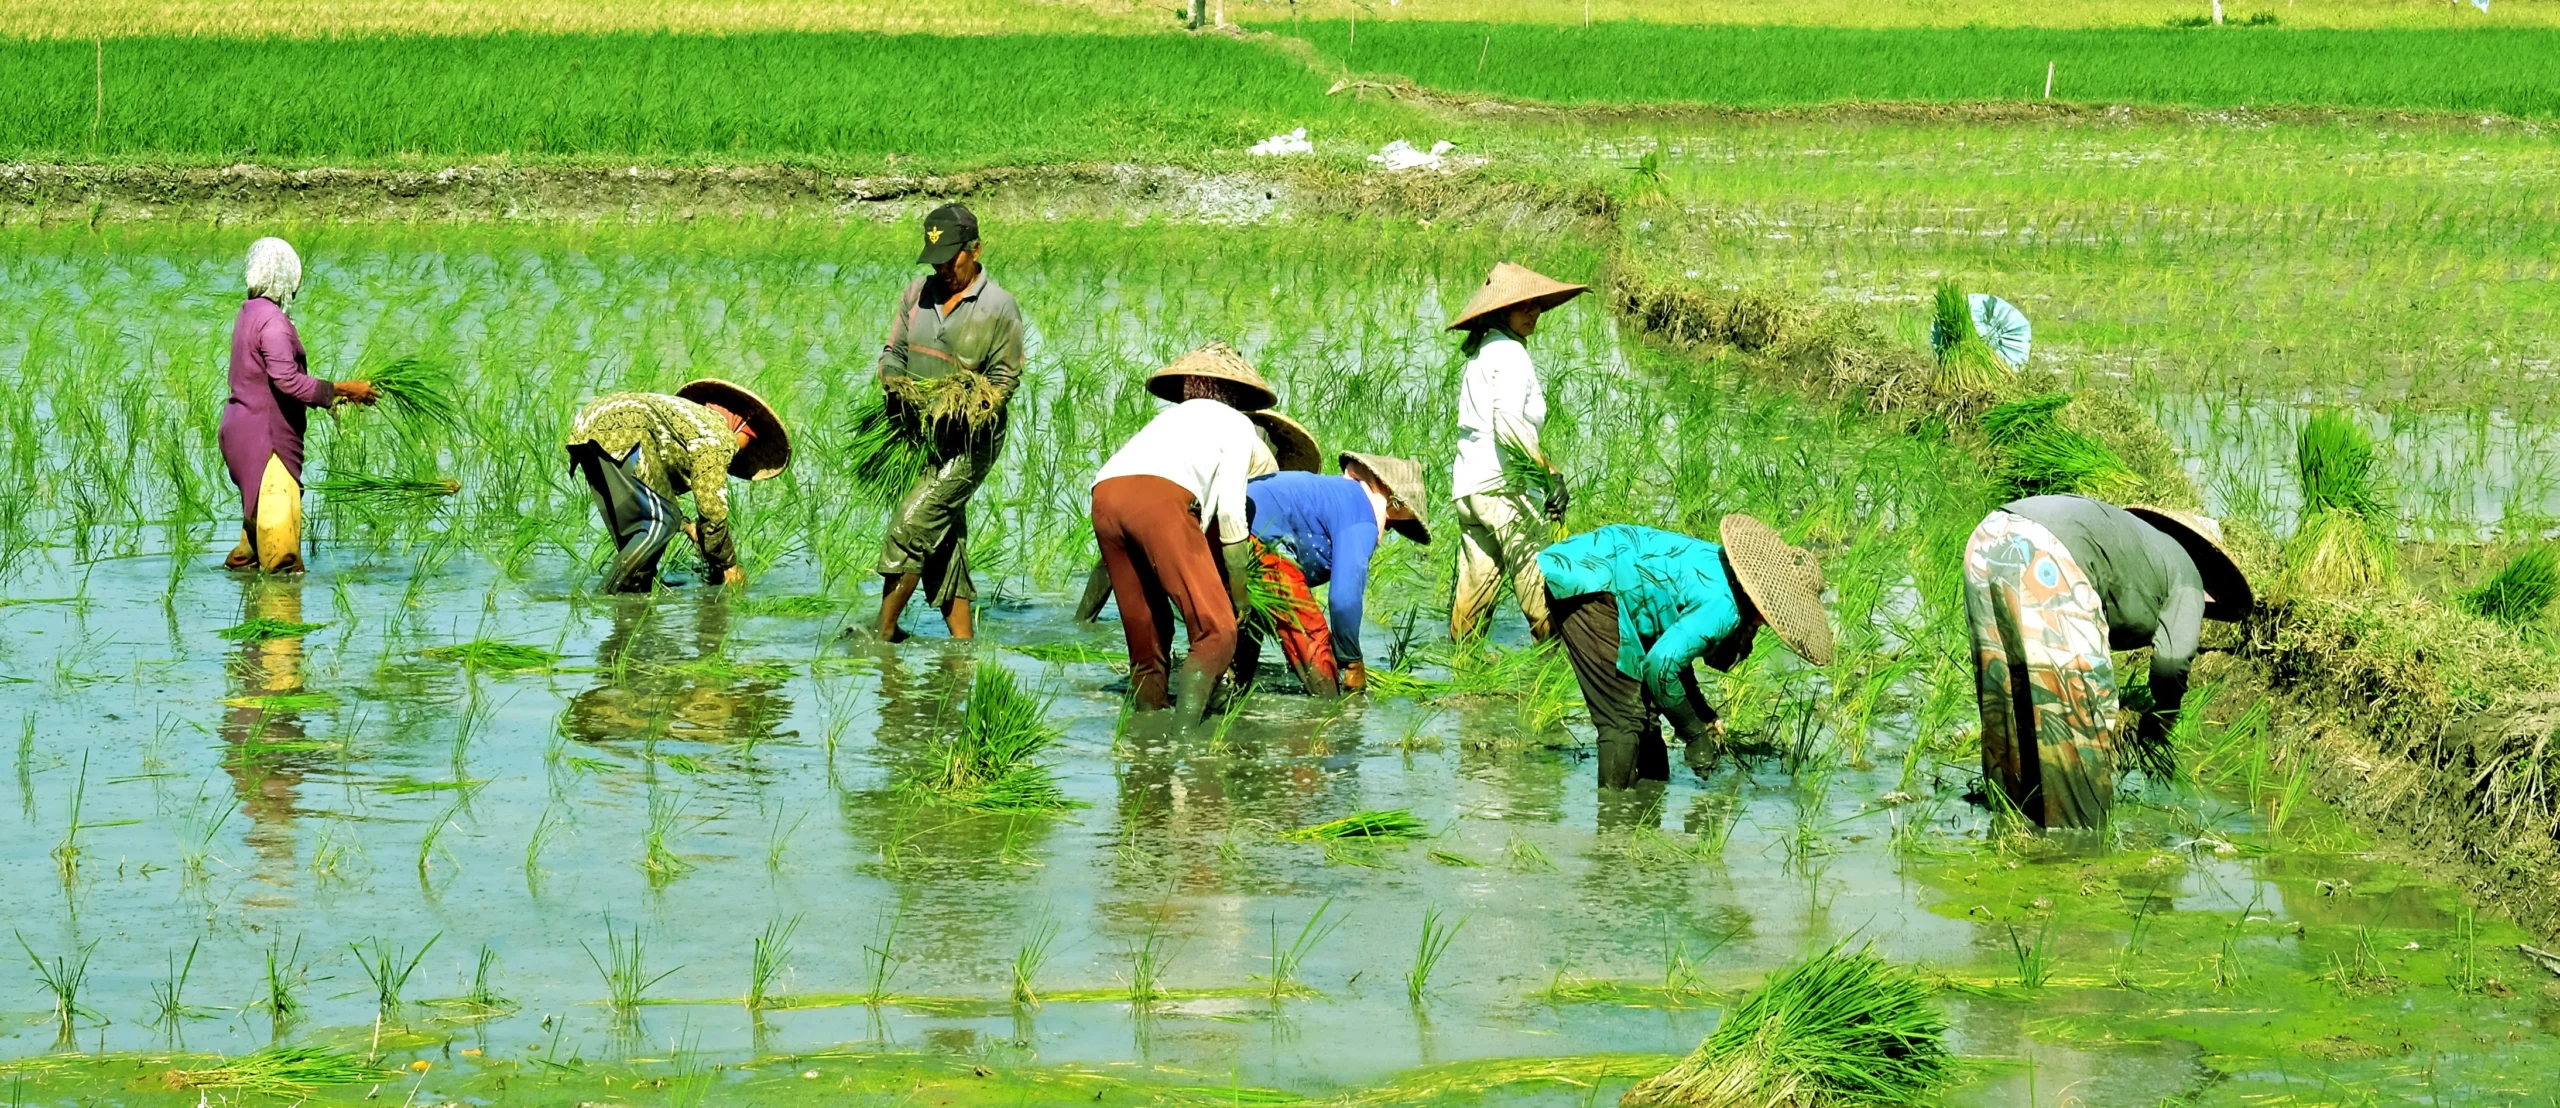 Paddy Farming full details in Hindi धान की खेती की पूरी जानकारी हिंदी में